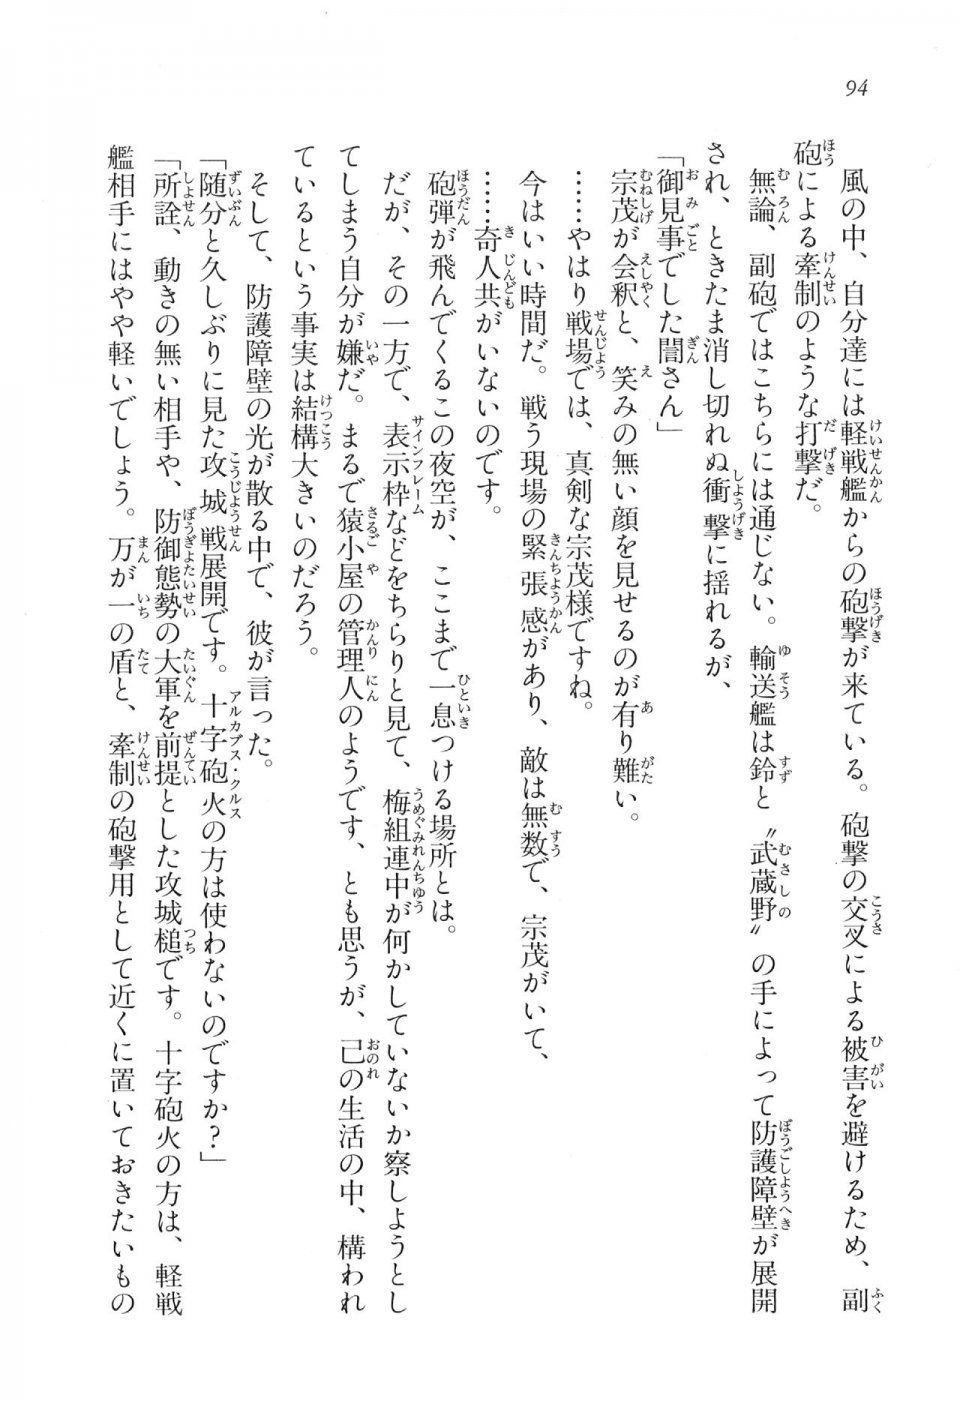 Kyoukai Senjou no Horizon LN Vol 17(7B) - Photo #94